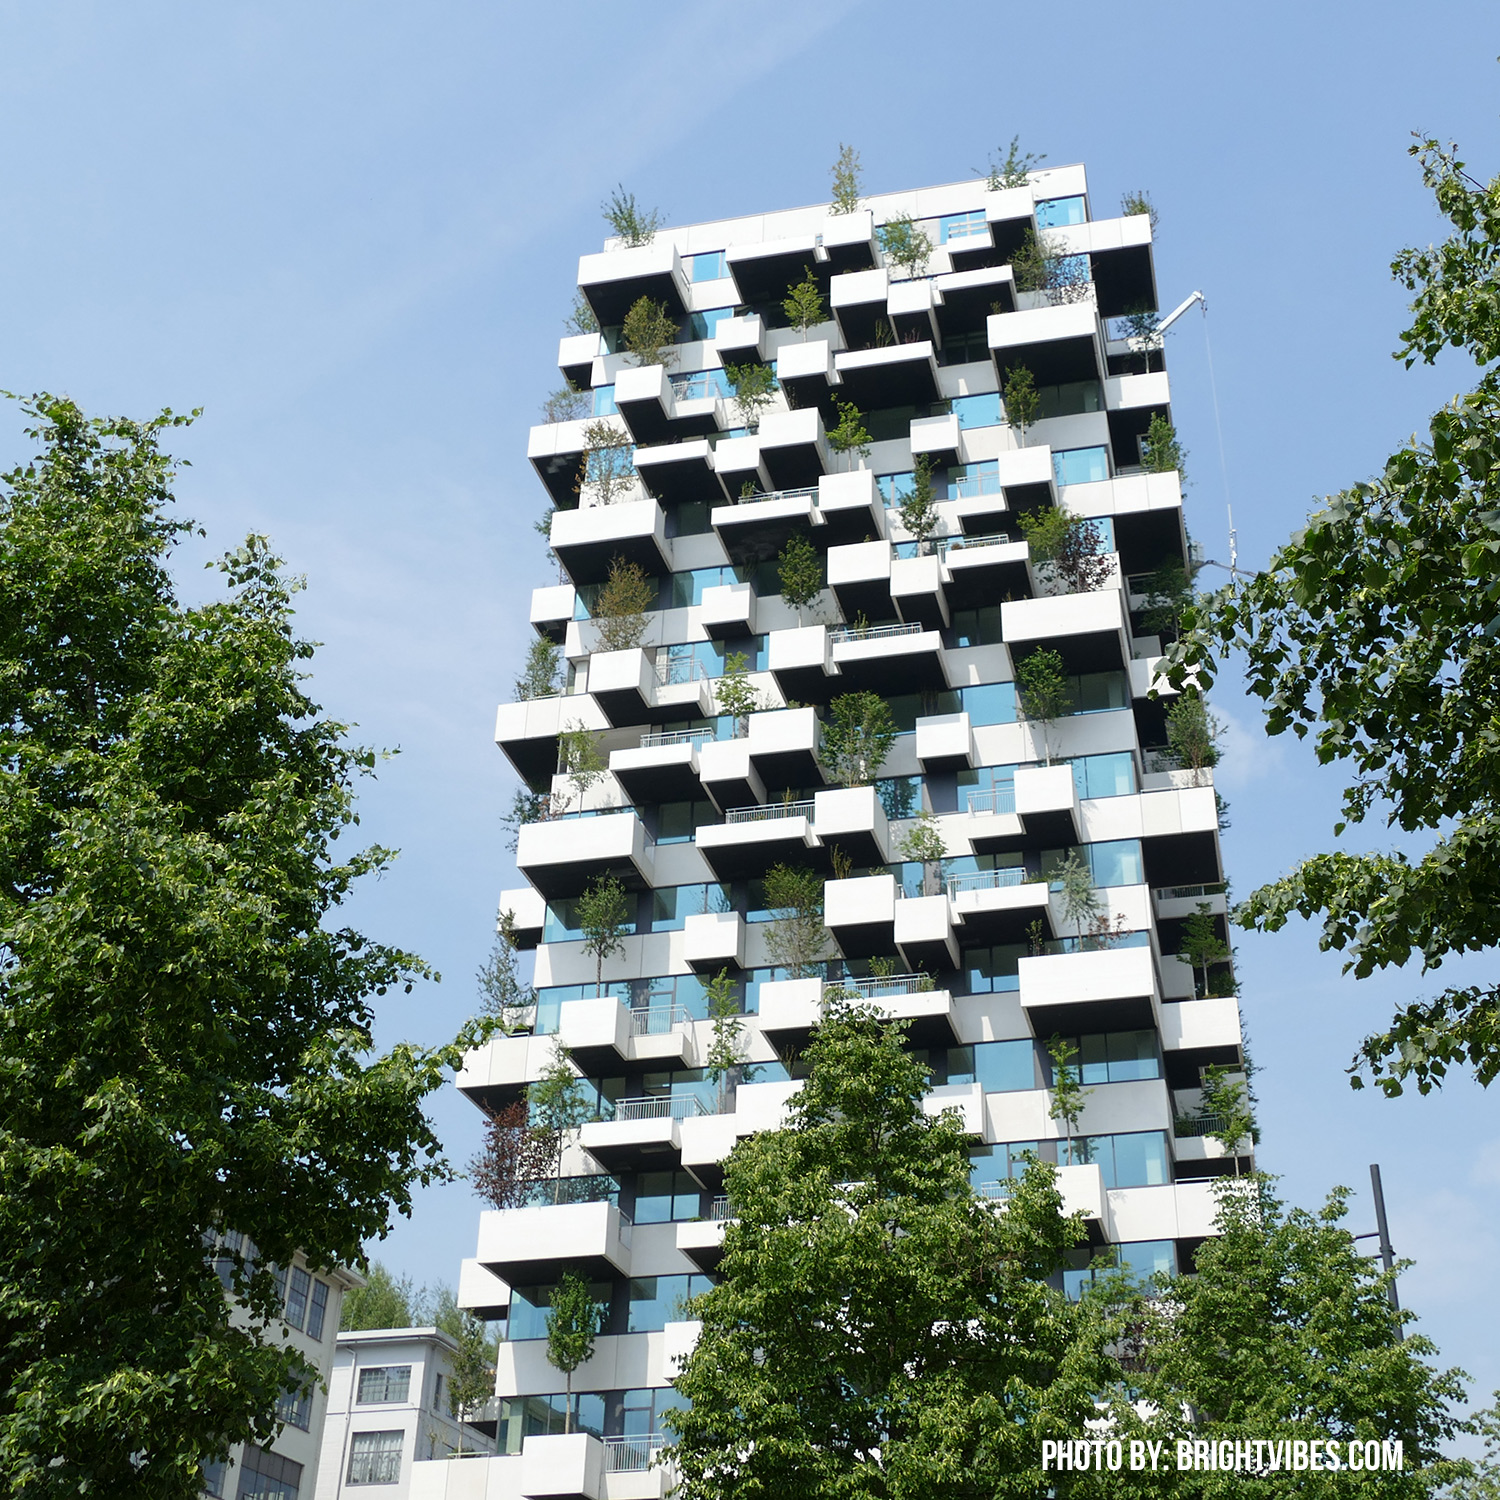 La pericia del arquitecto Stefano Boeri, que ya es reconocido por las torres residenciales verdes en Milán, ha sido el encargado de la realización de un complejo de apartamentos verde en Strijp-S por la asociación de Sint-Trudo.